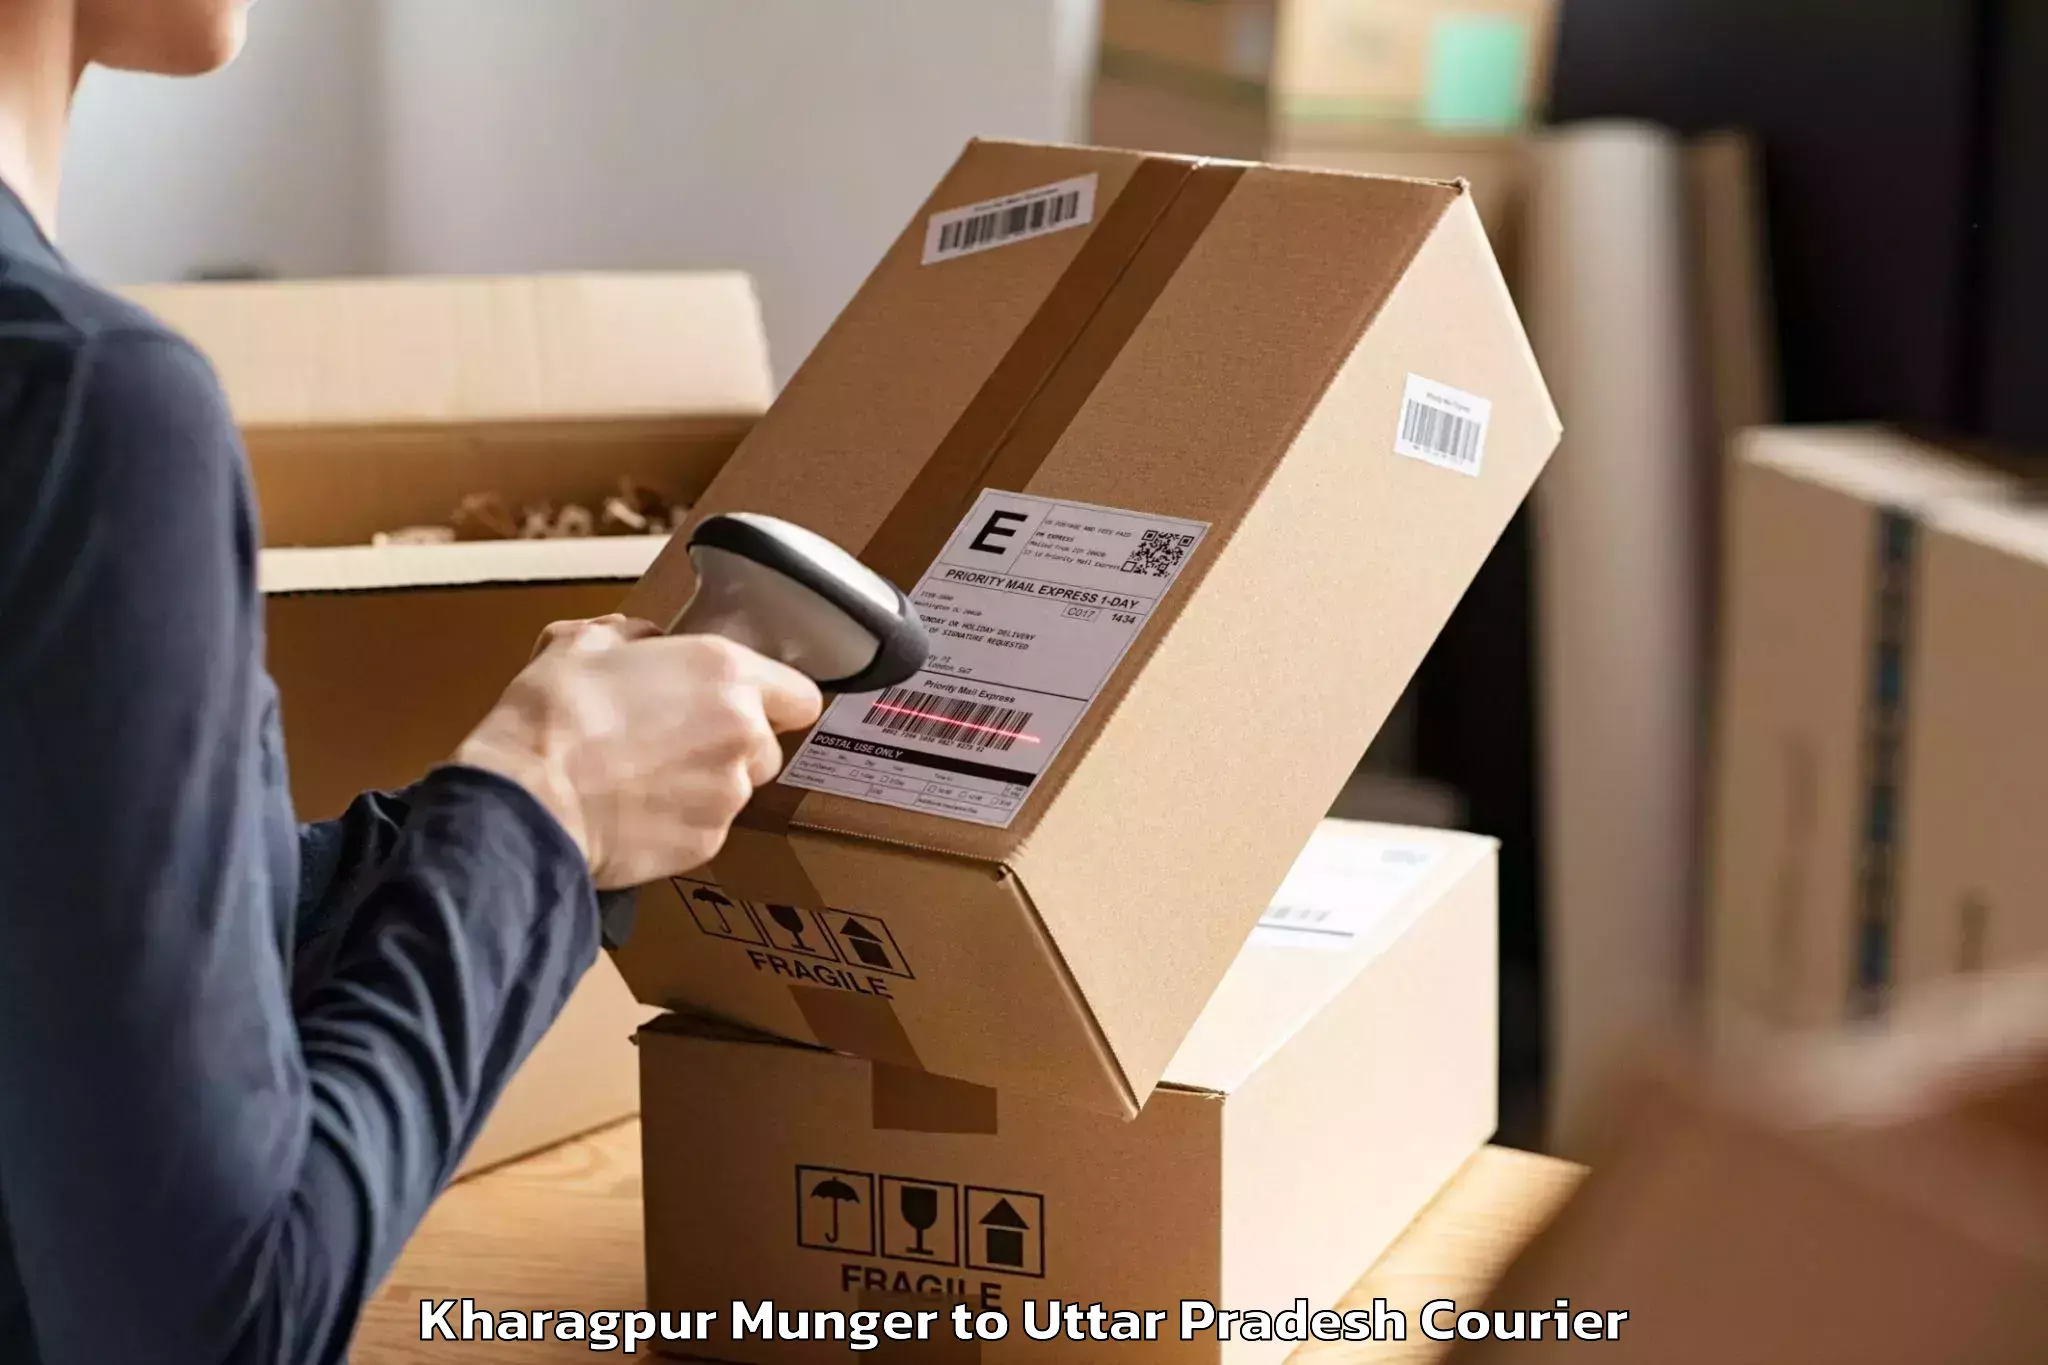 Furniture logistics Kharagpur Munger to Khurja